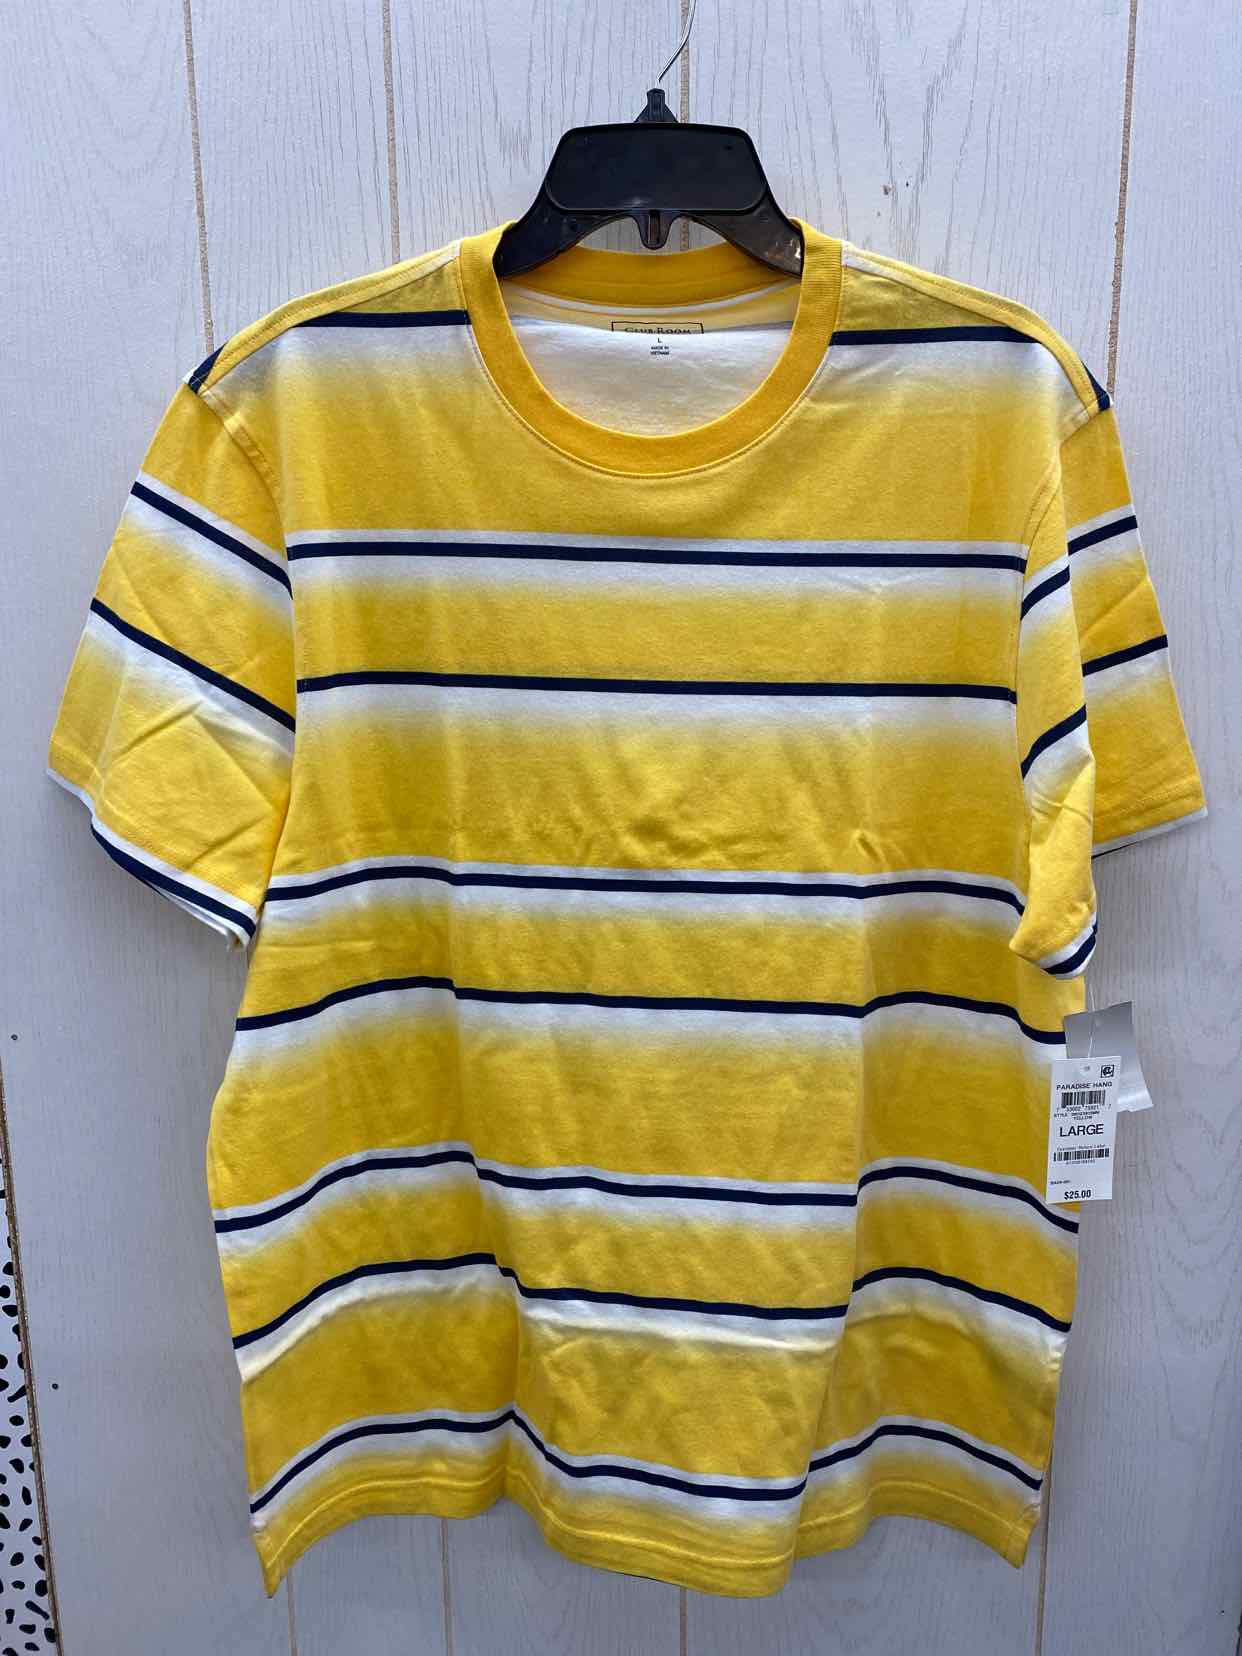 Vintage Men's T-Shirt - Yellow - L